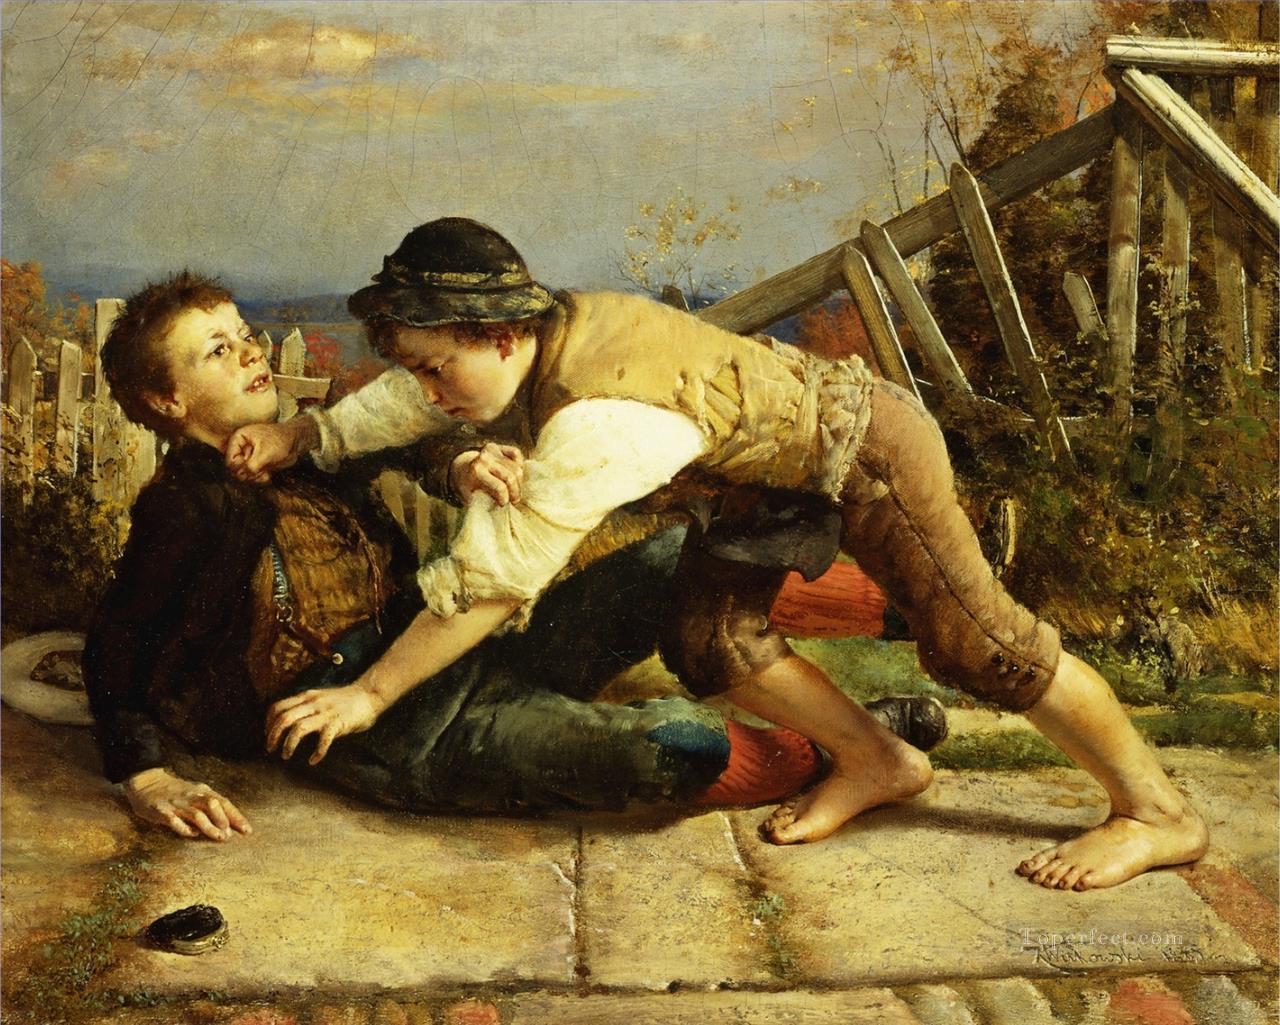 ボーイッシュないたずら 1885 カール・ヴィトコウスキー油絵